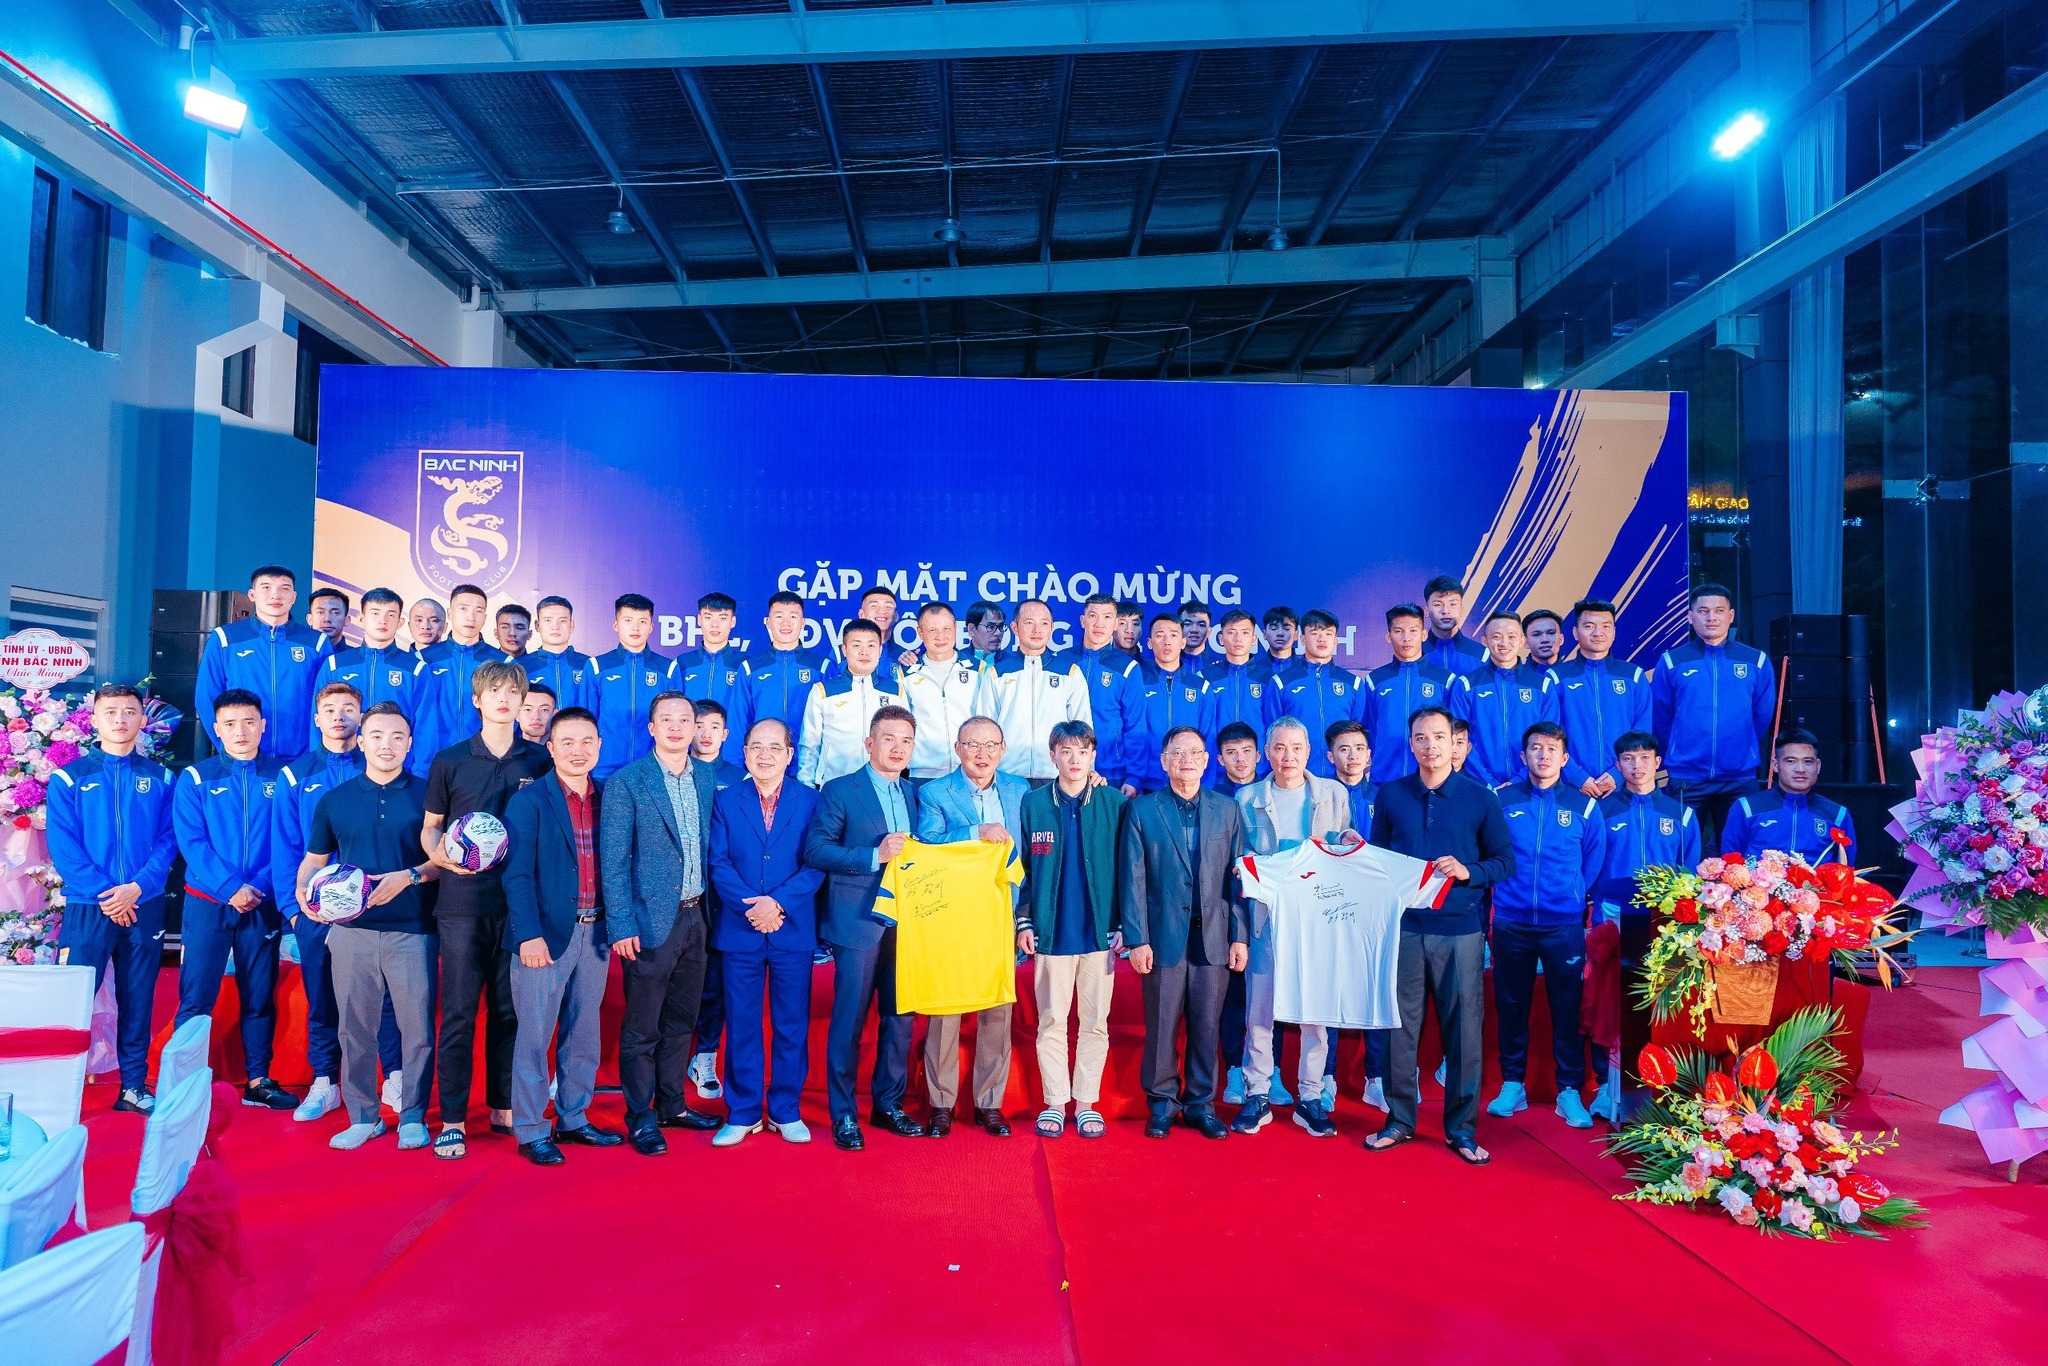 Buổi lễ gặp mặt chào mừng FC Bắc Ninh